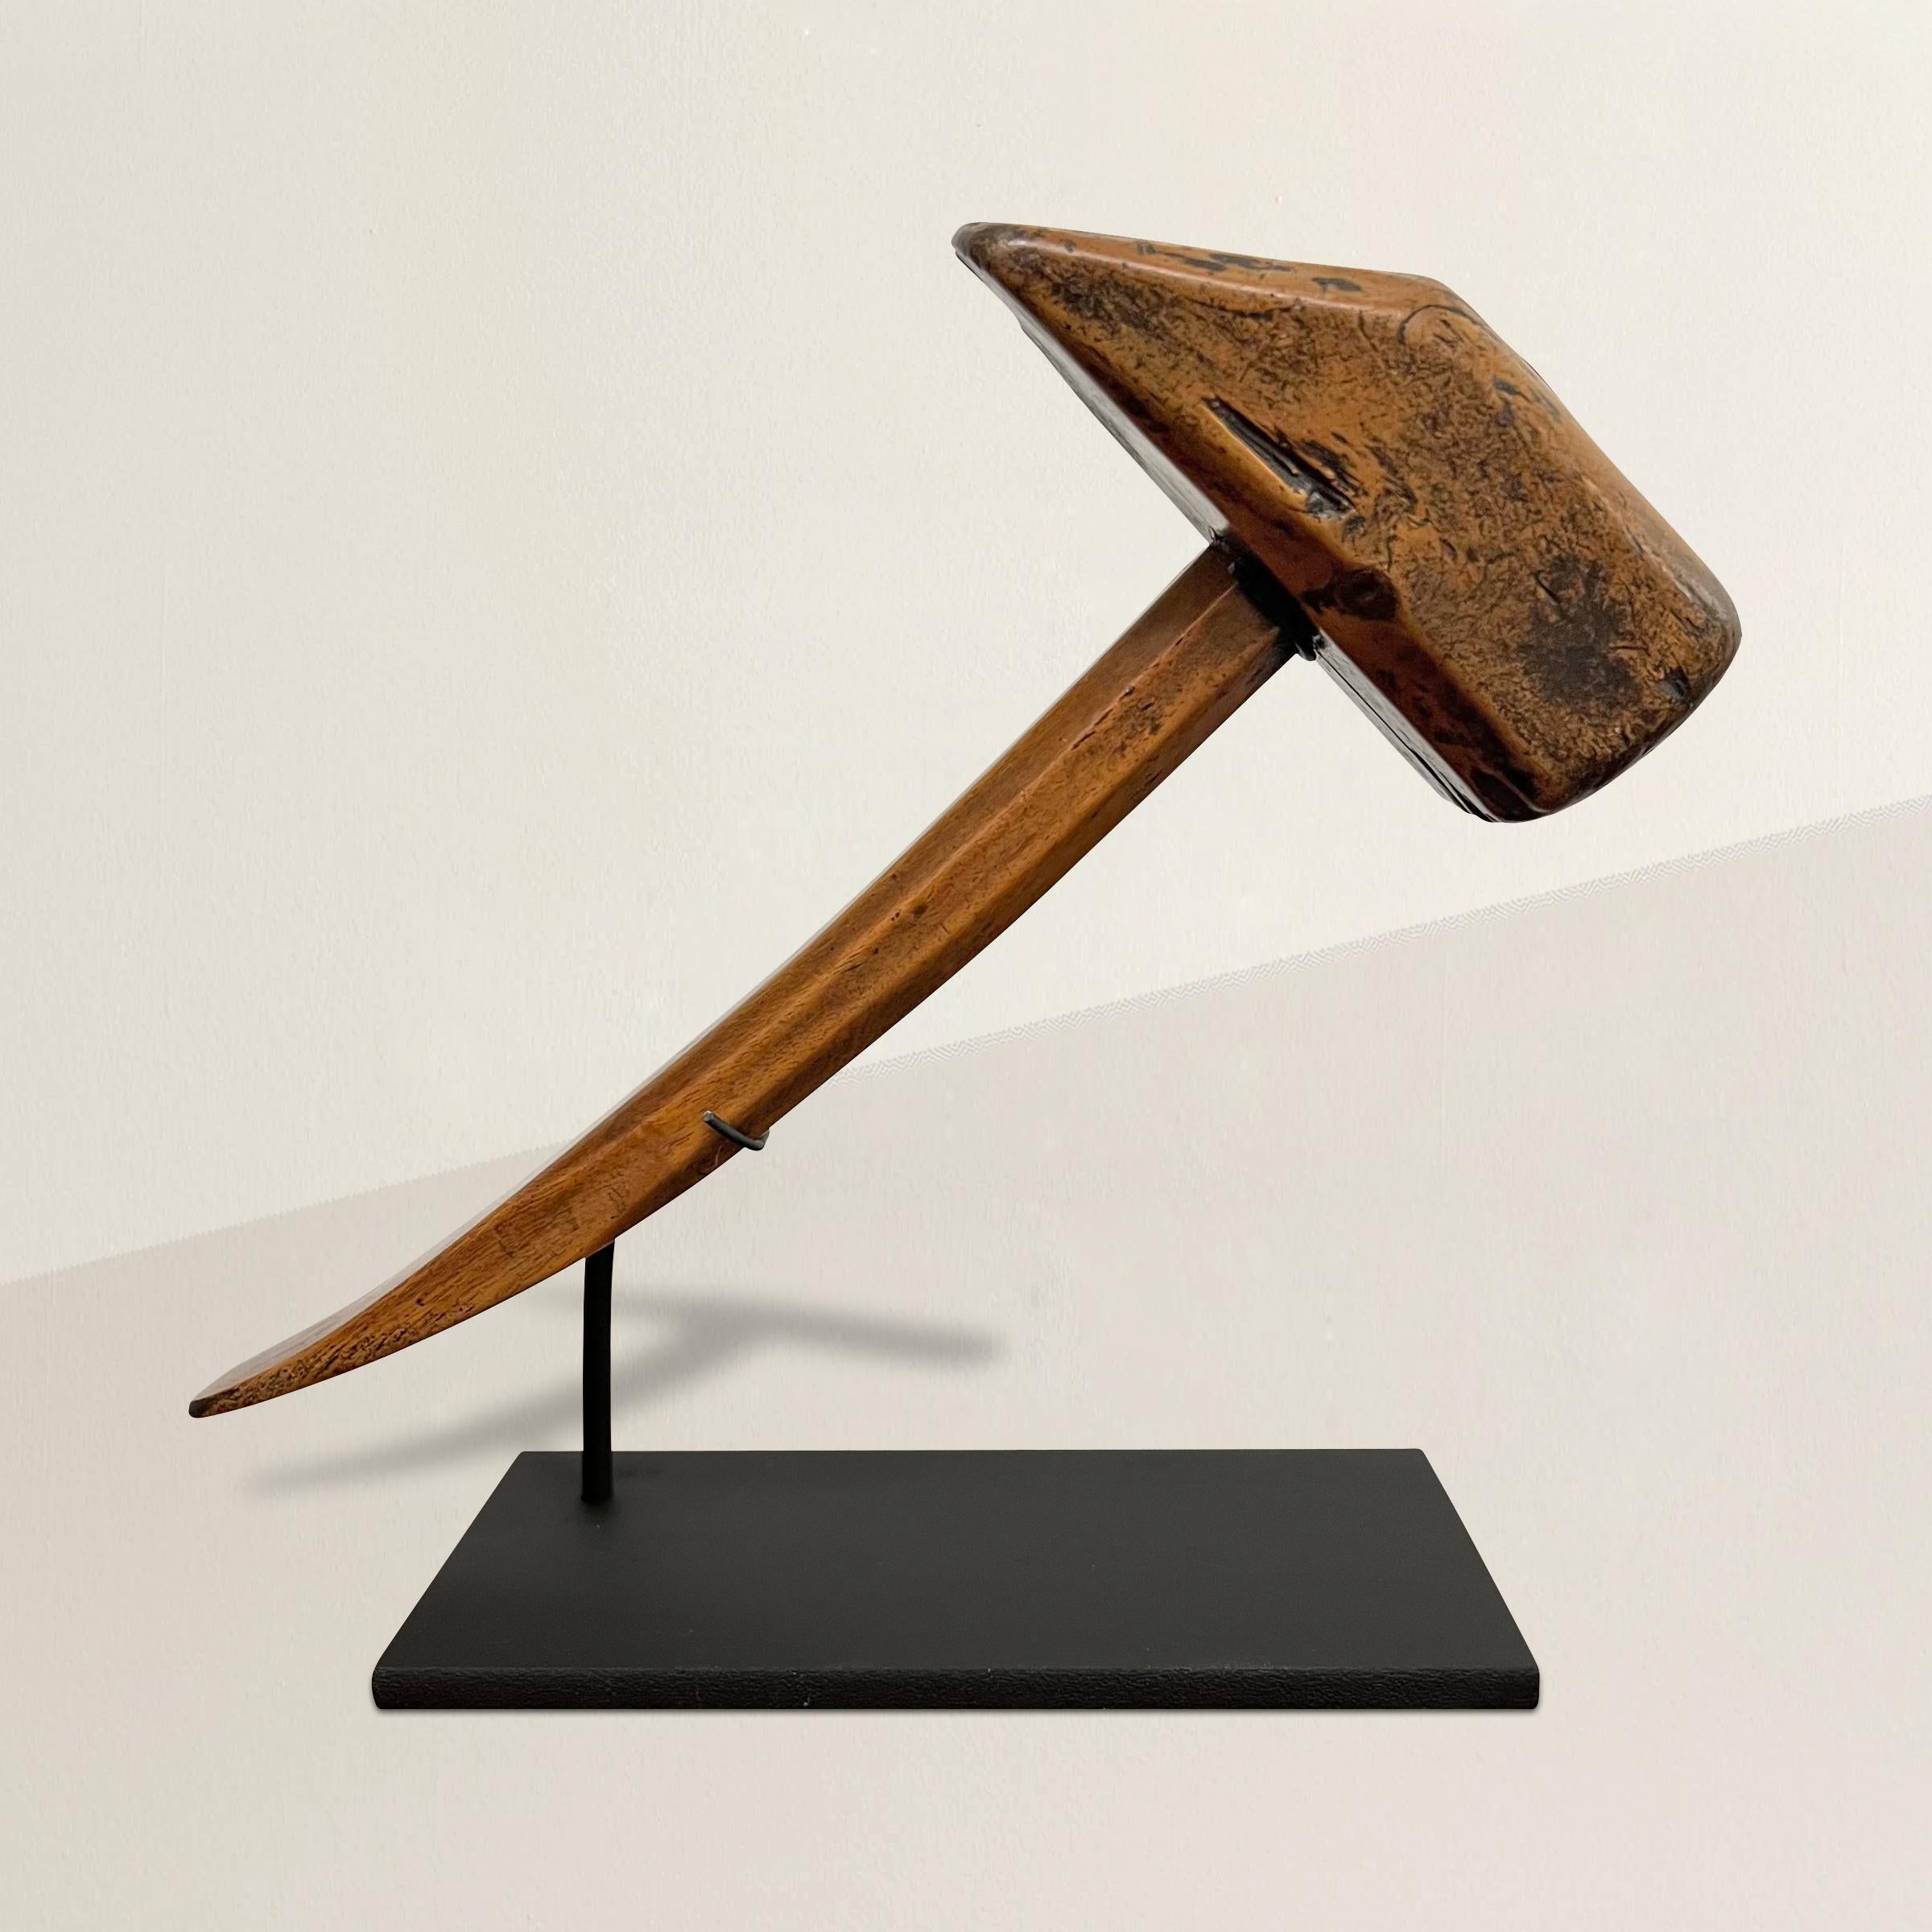 Ein treuer, hart arbeitender Schusterhammer aus französischem Nussbaumholz aus dem 19. Jahrhundert mit der schönsten Patina, die nur zweihundert Jahre Gebrauch verleihen können, und montiert auf einem speziell angefertigten Stahlständer. Ob Sie